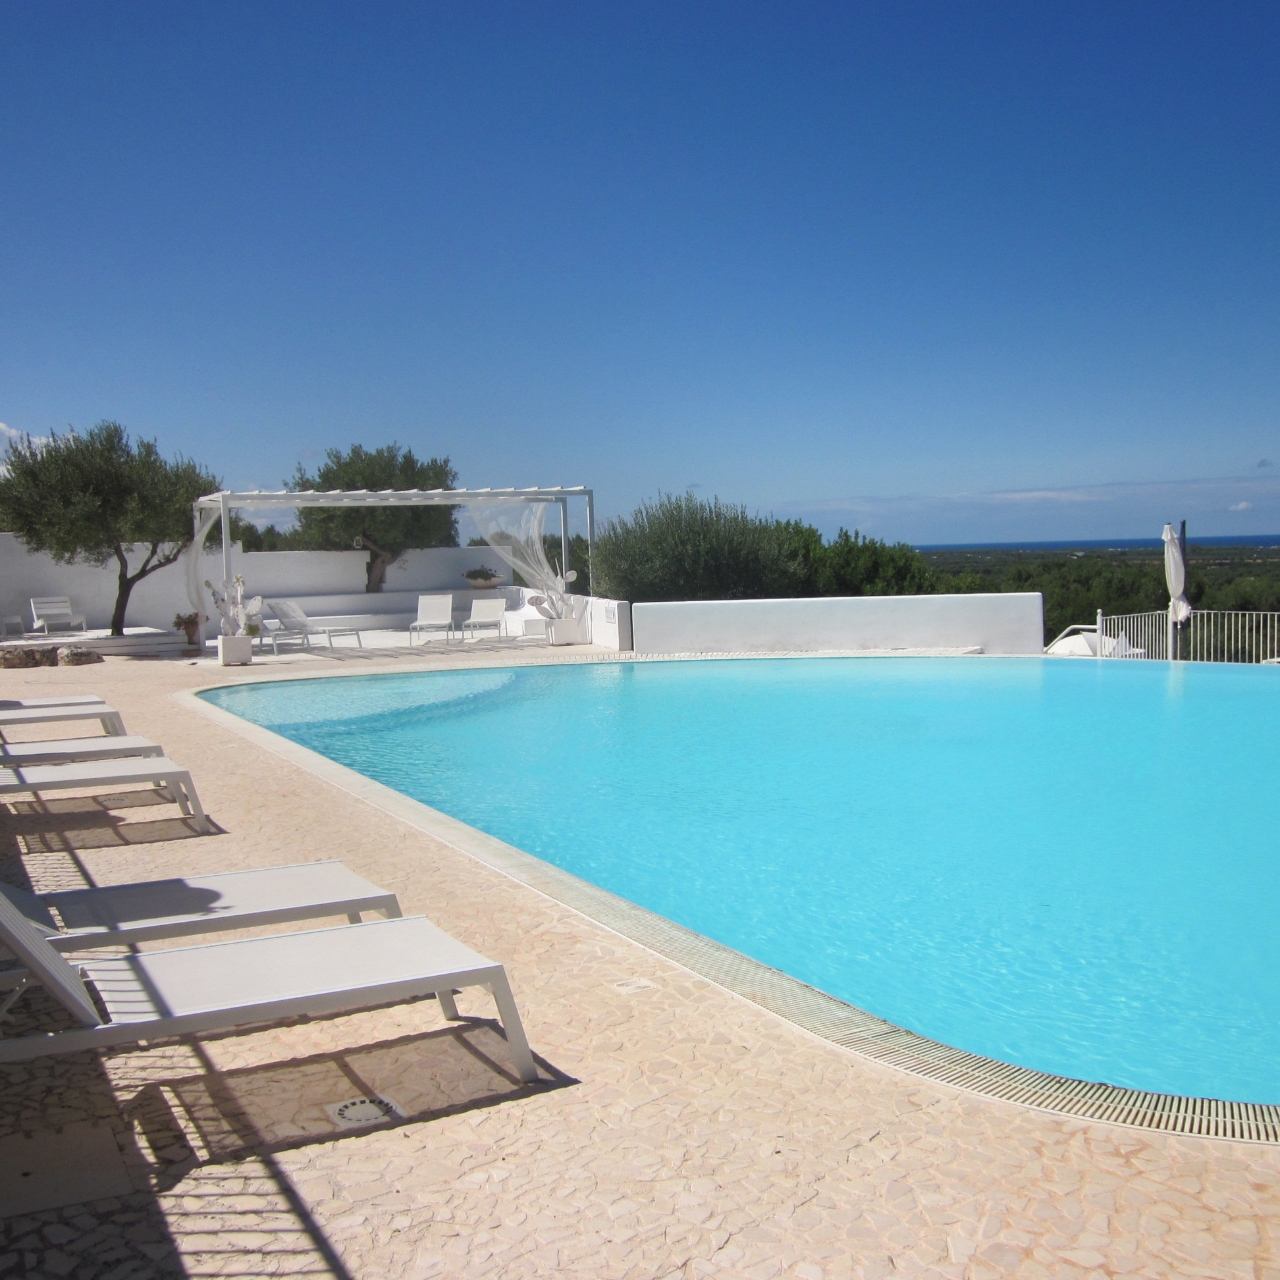 Corte di Ferro Hotel Resort - 4 HRS star hotel in Carovigno (Apulia)